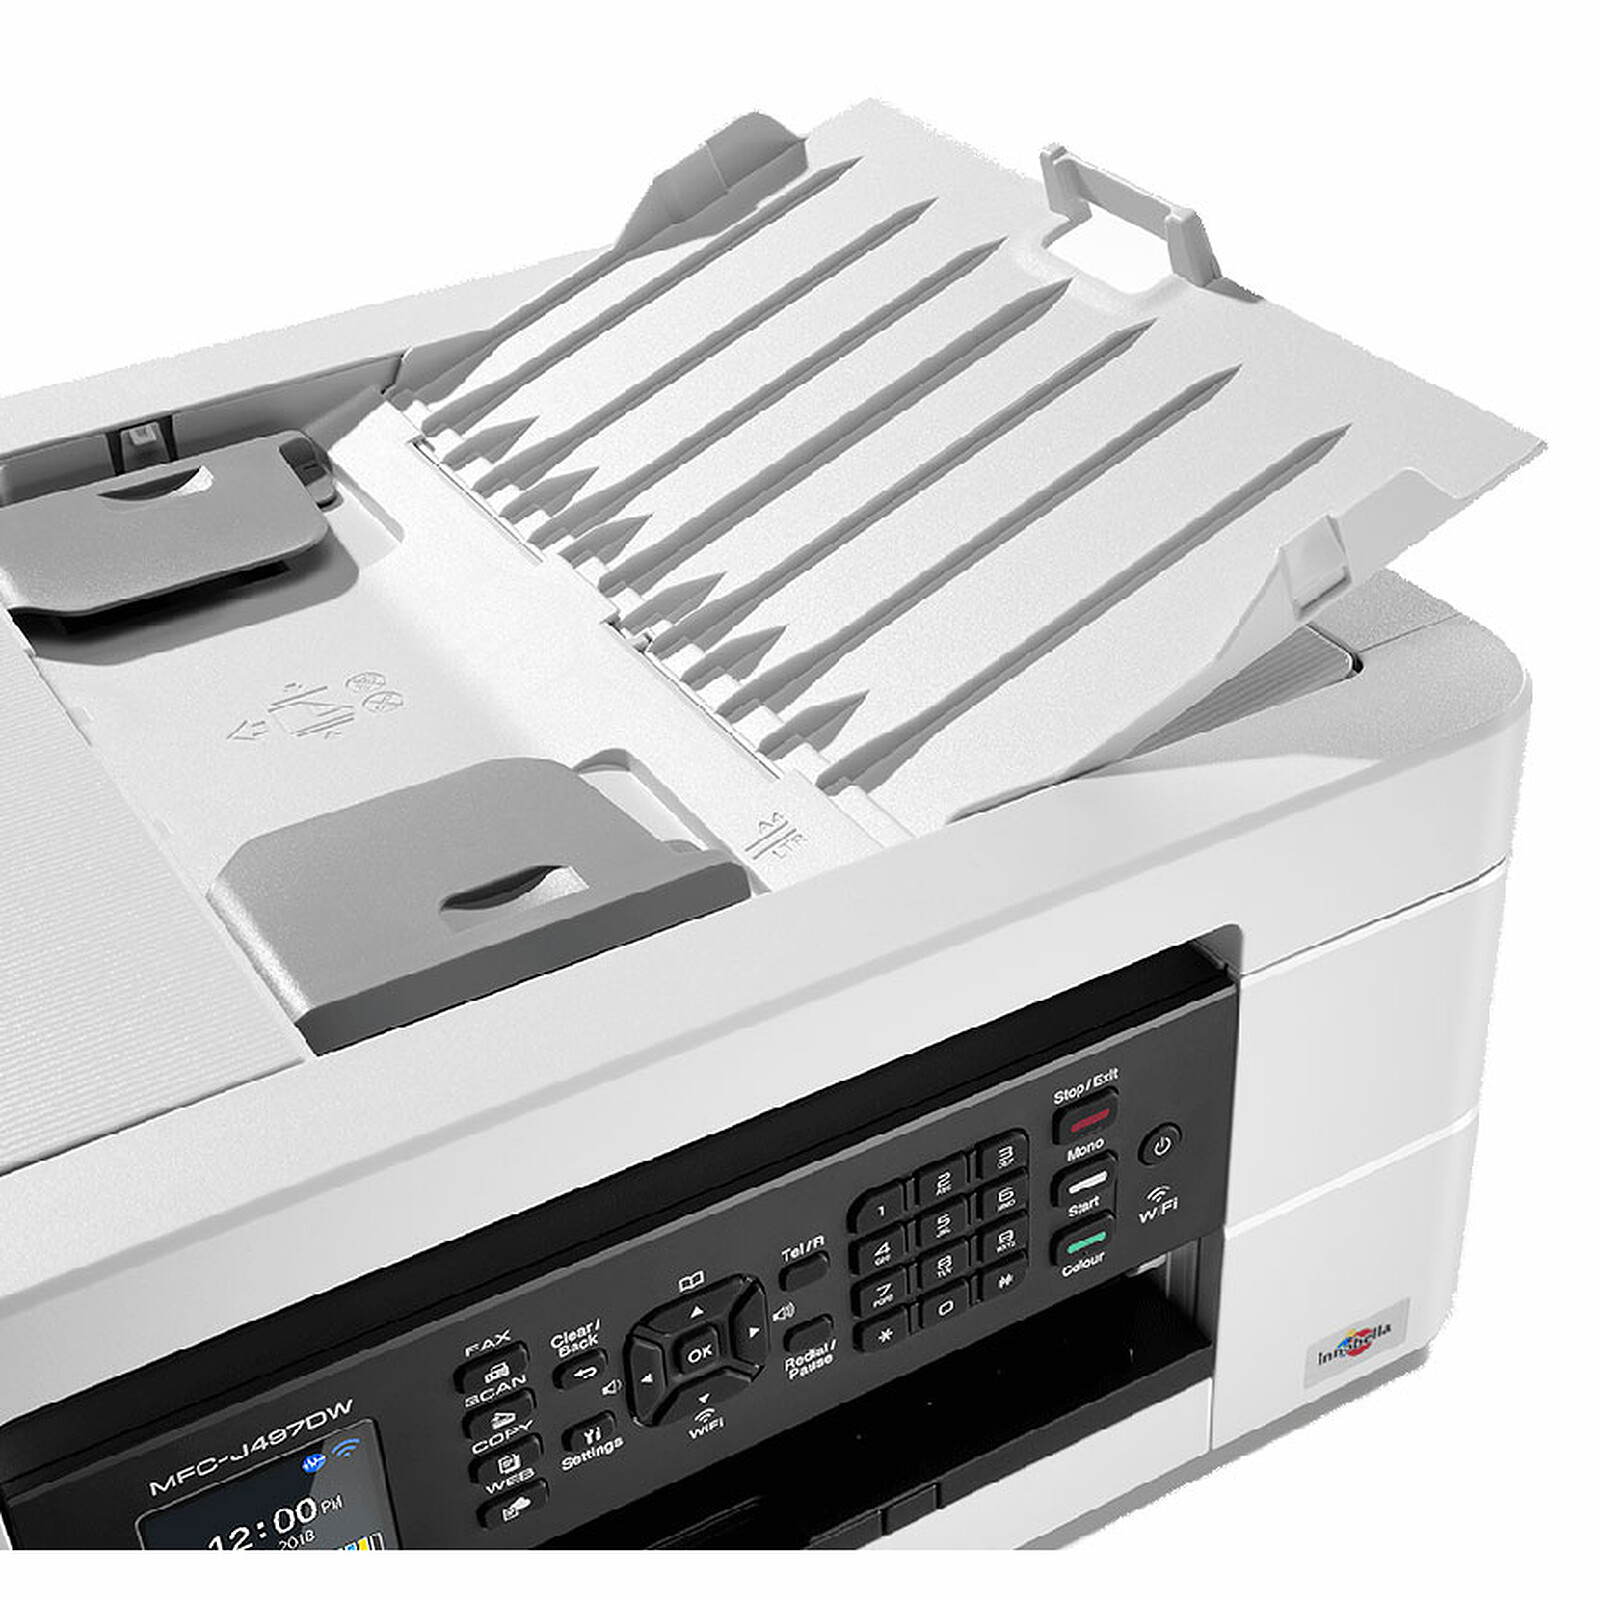 Brother MFC-J4540DW - Imprimante multifonction - Garantie 3 ans LDLC